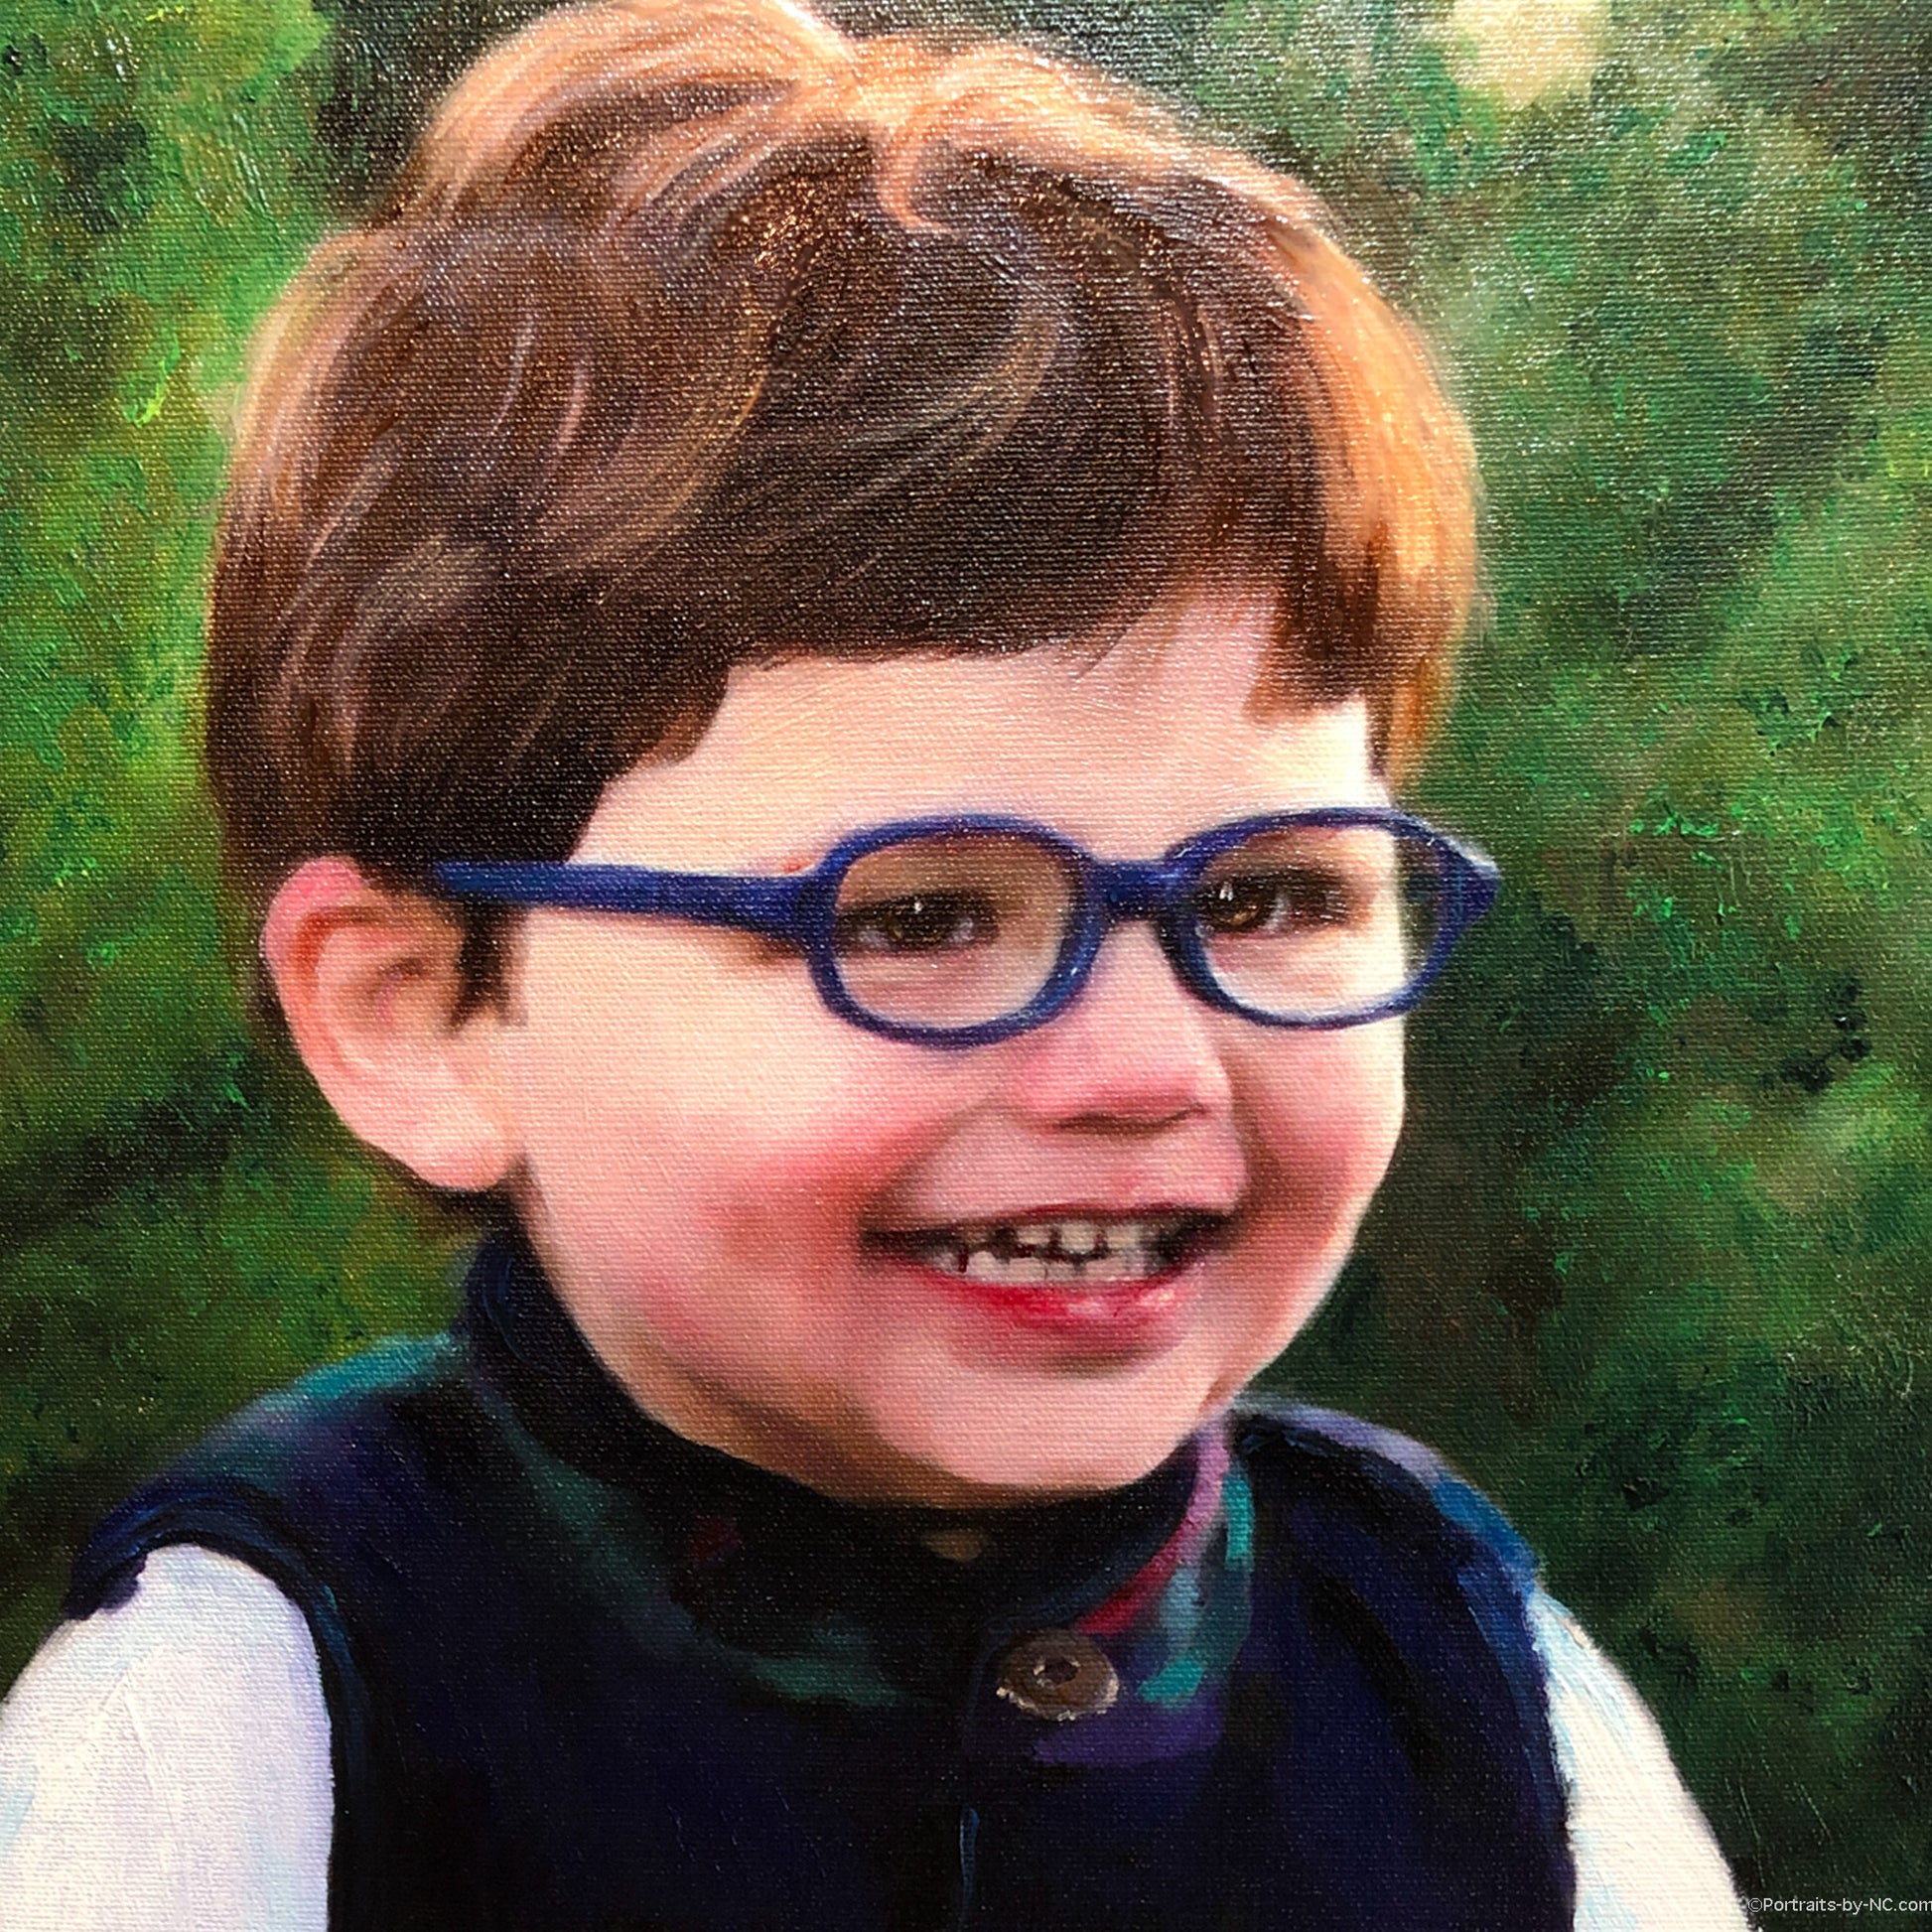 Child Portrait - Portrait of a boy